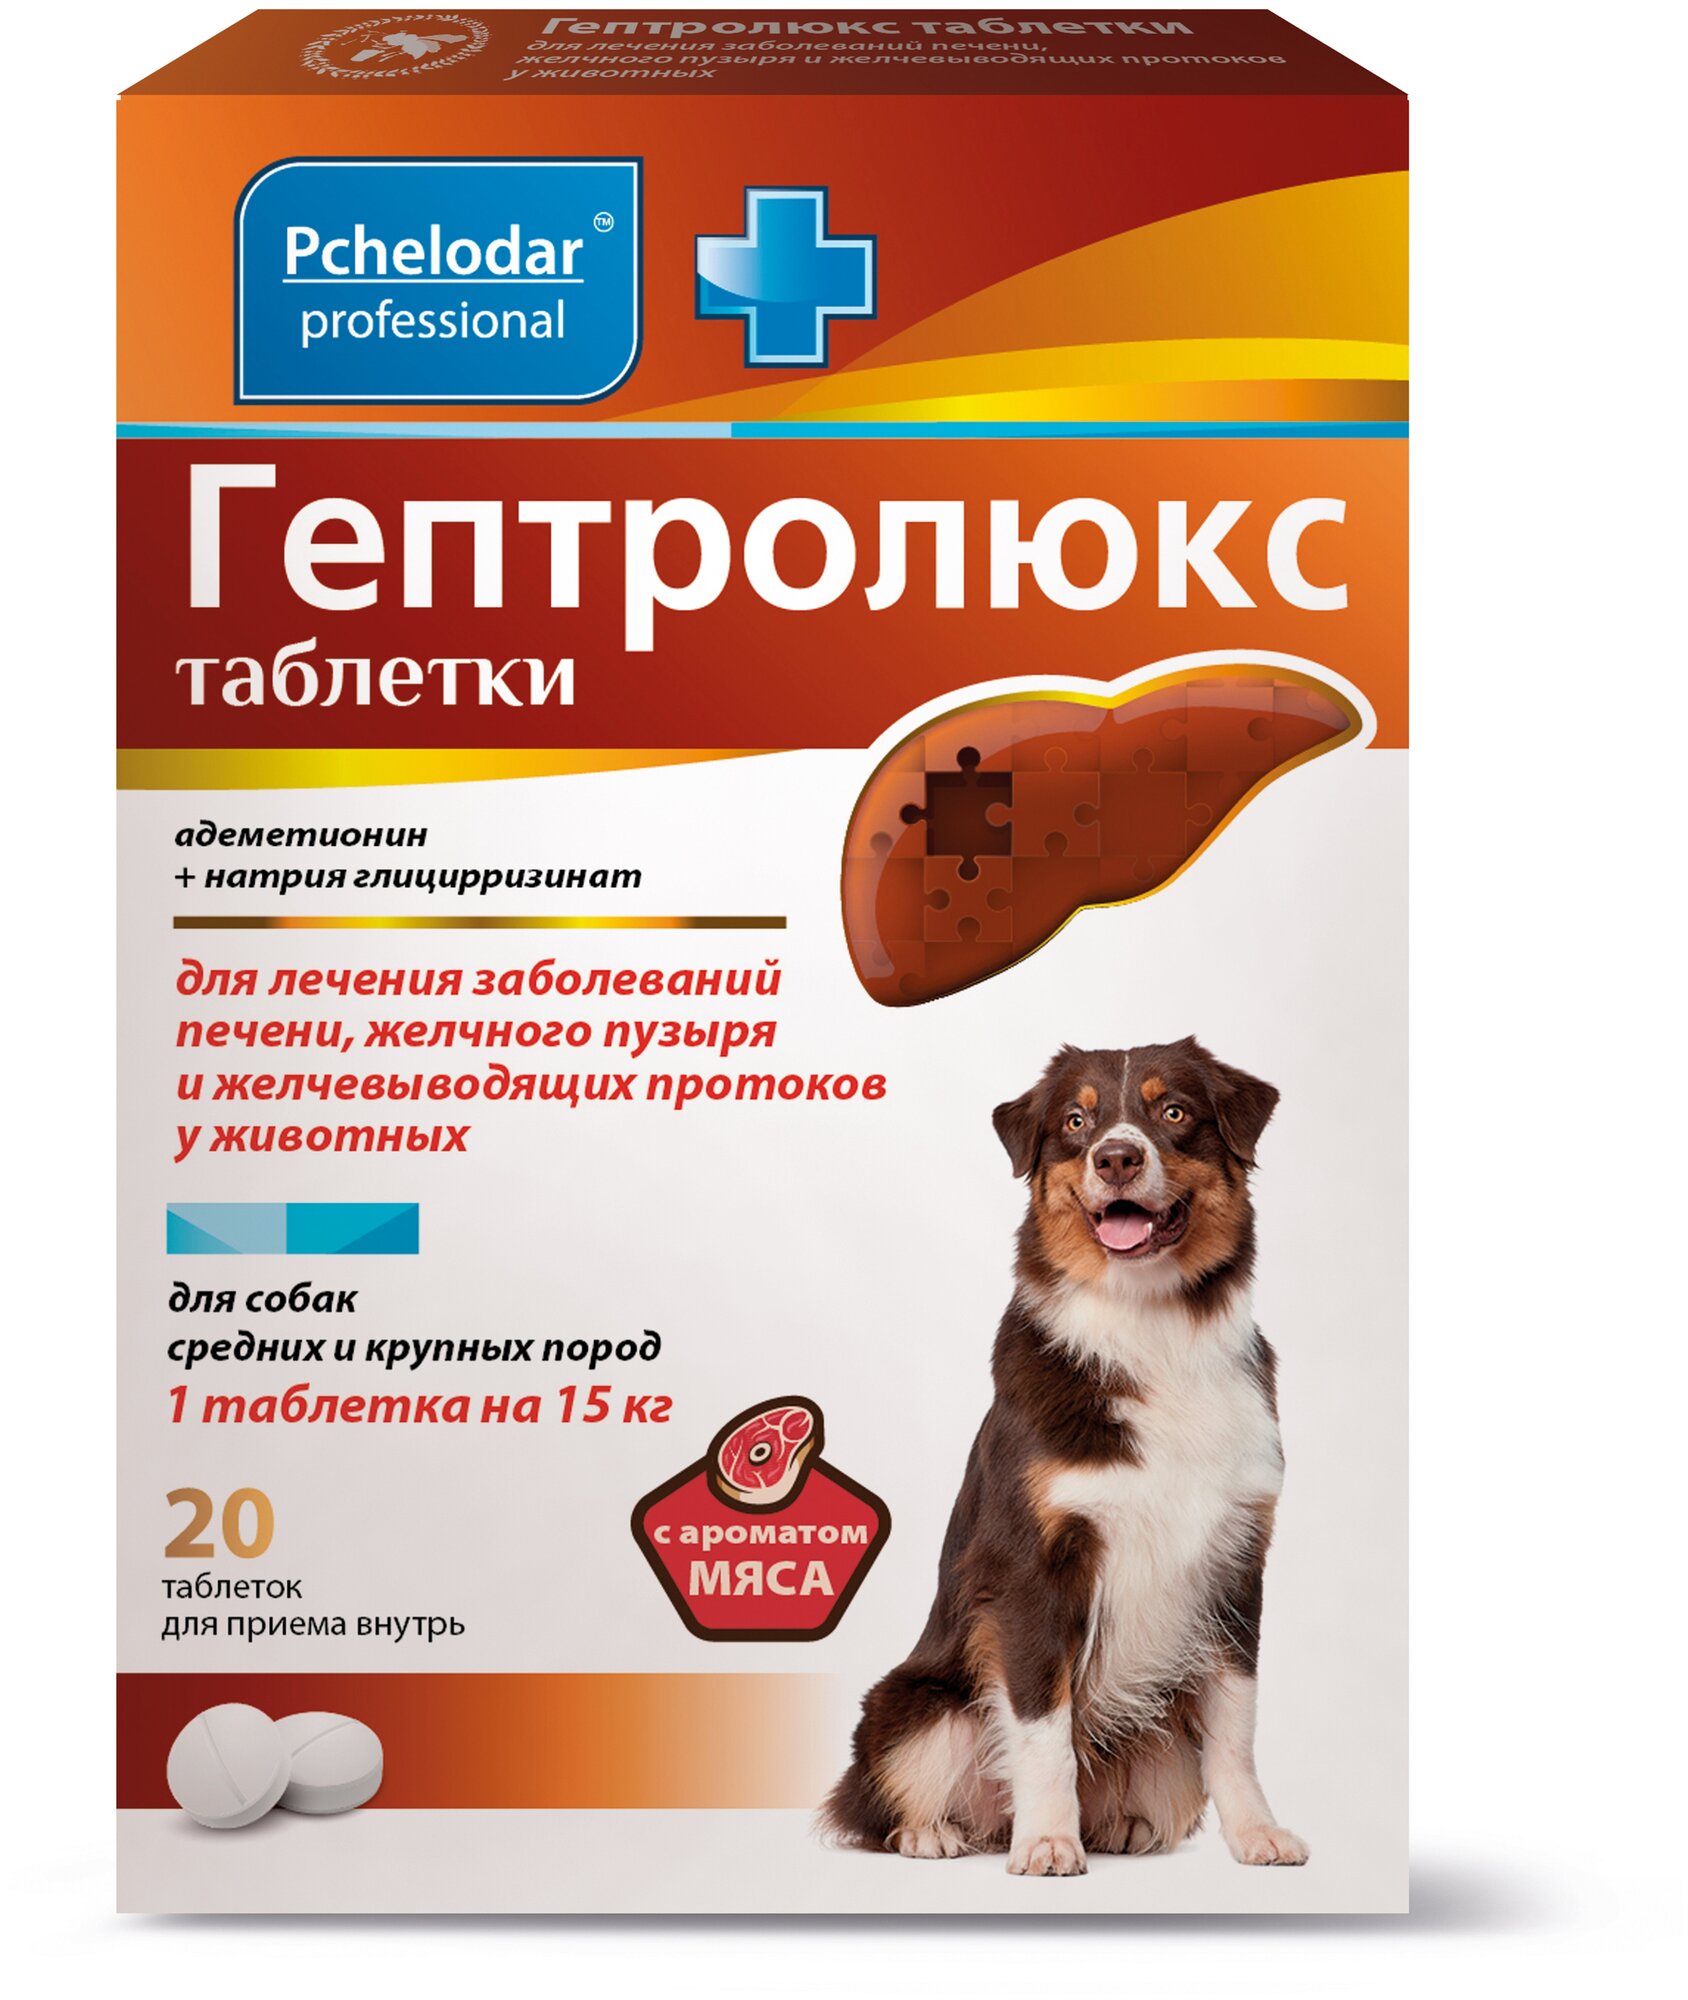 Пчелодар Гептролюкс таблетки для собак средних и крупных пород упаковка 20 таб